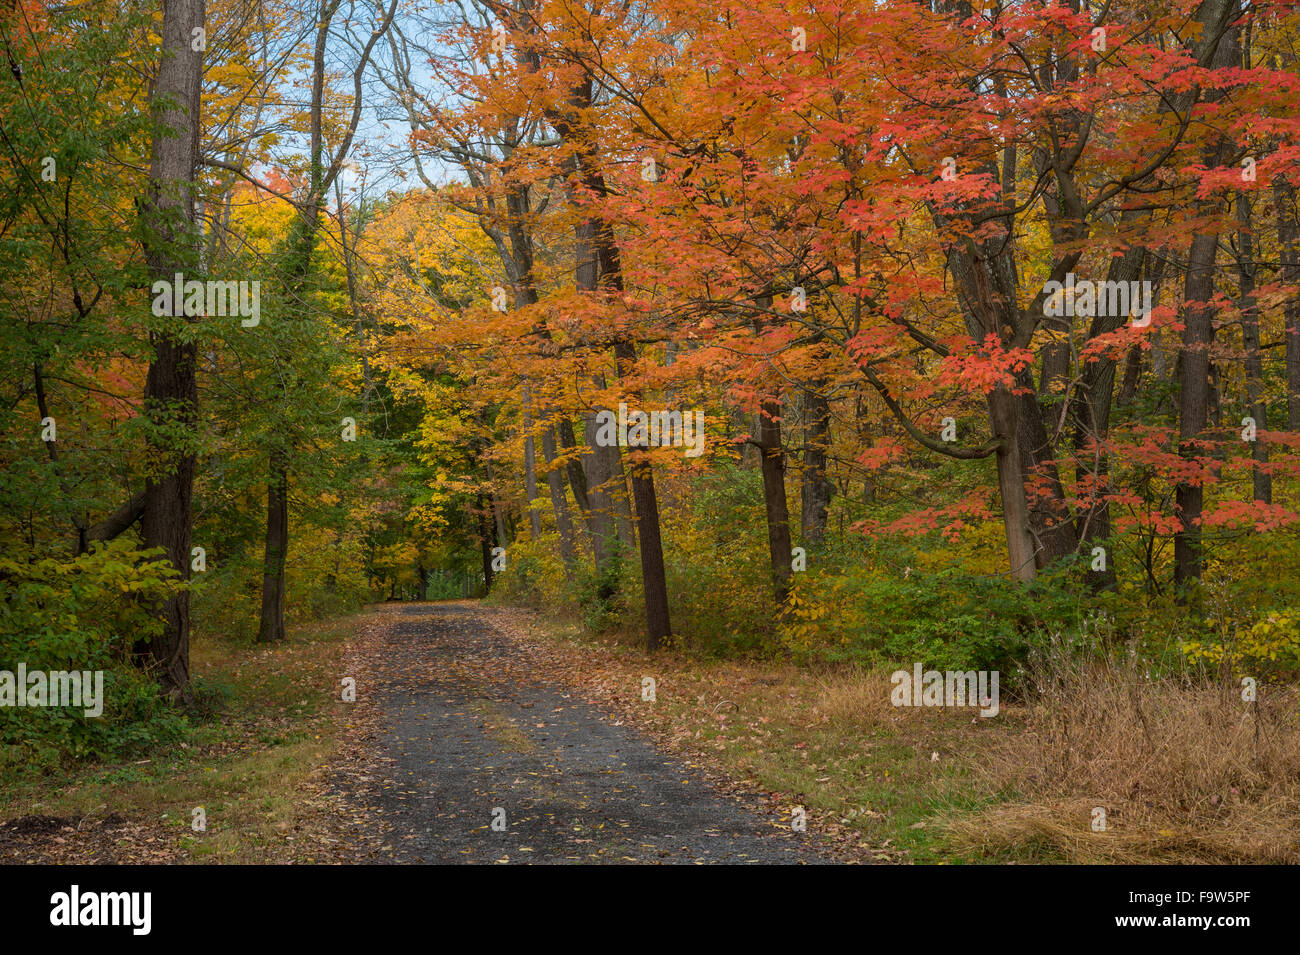 Strada rurale con alberi d'Autunno caduta delle foglie, in Pennsylvania, STATI UNITI D'AMERICA Foto Stock